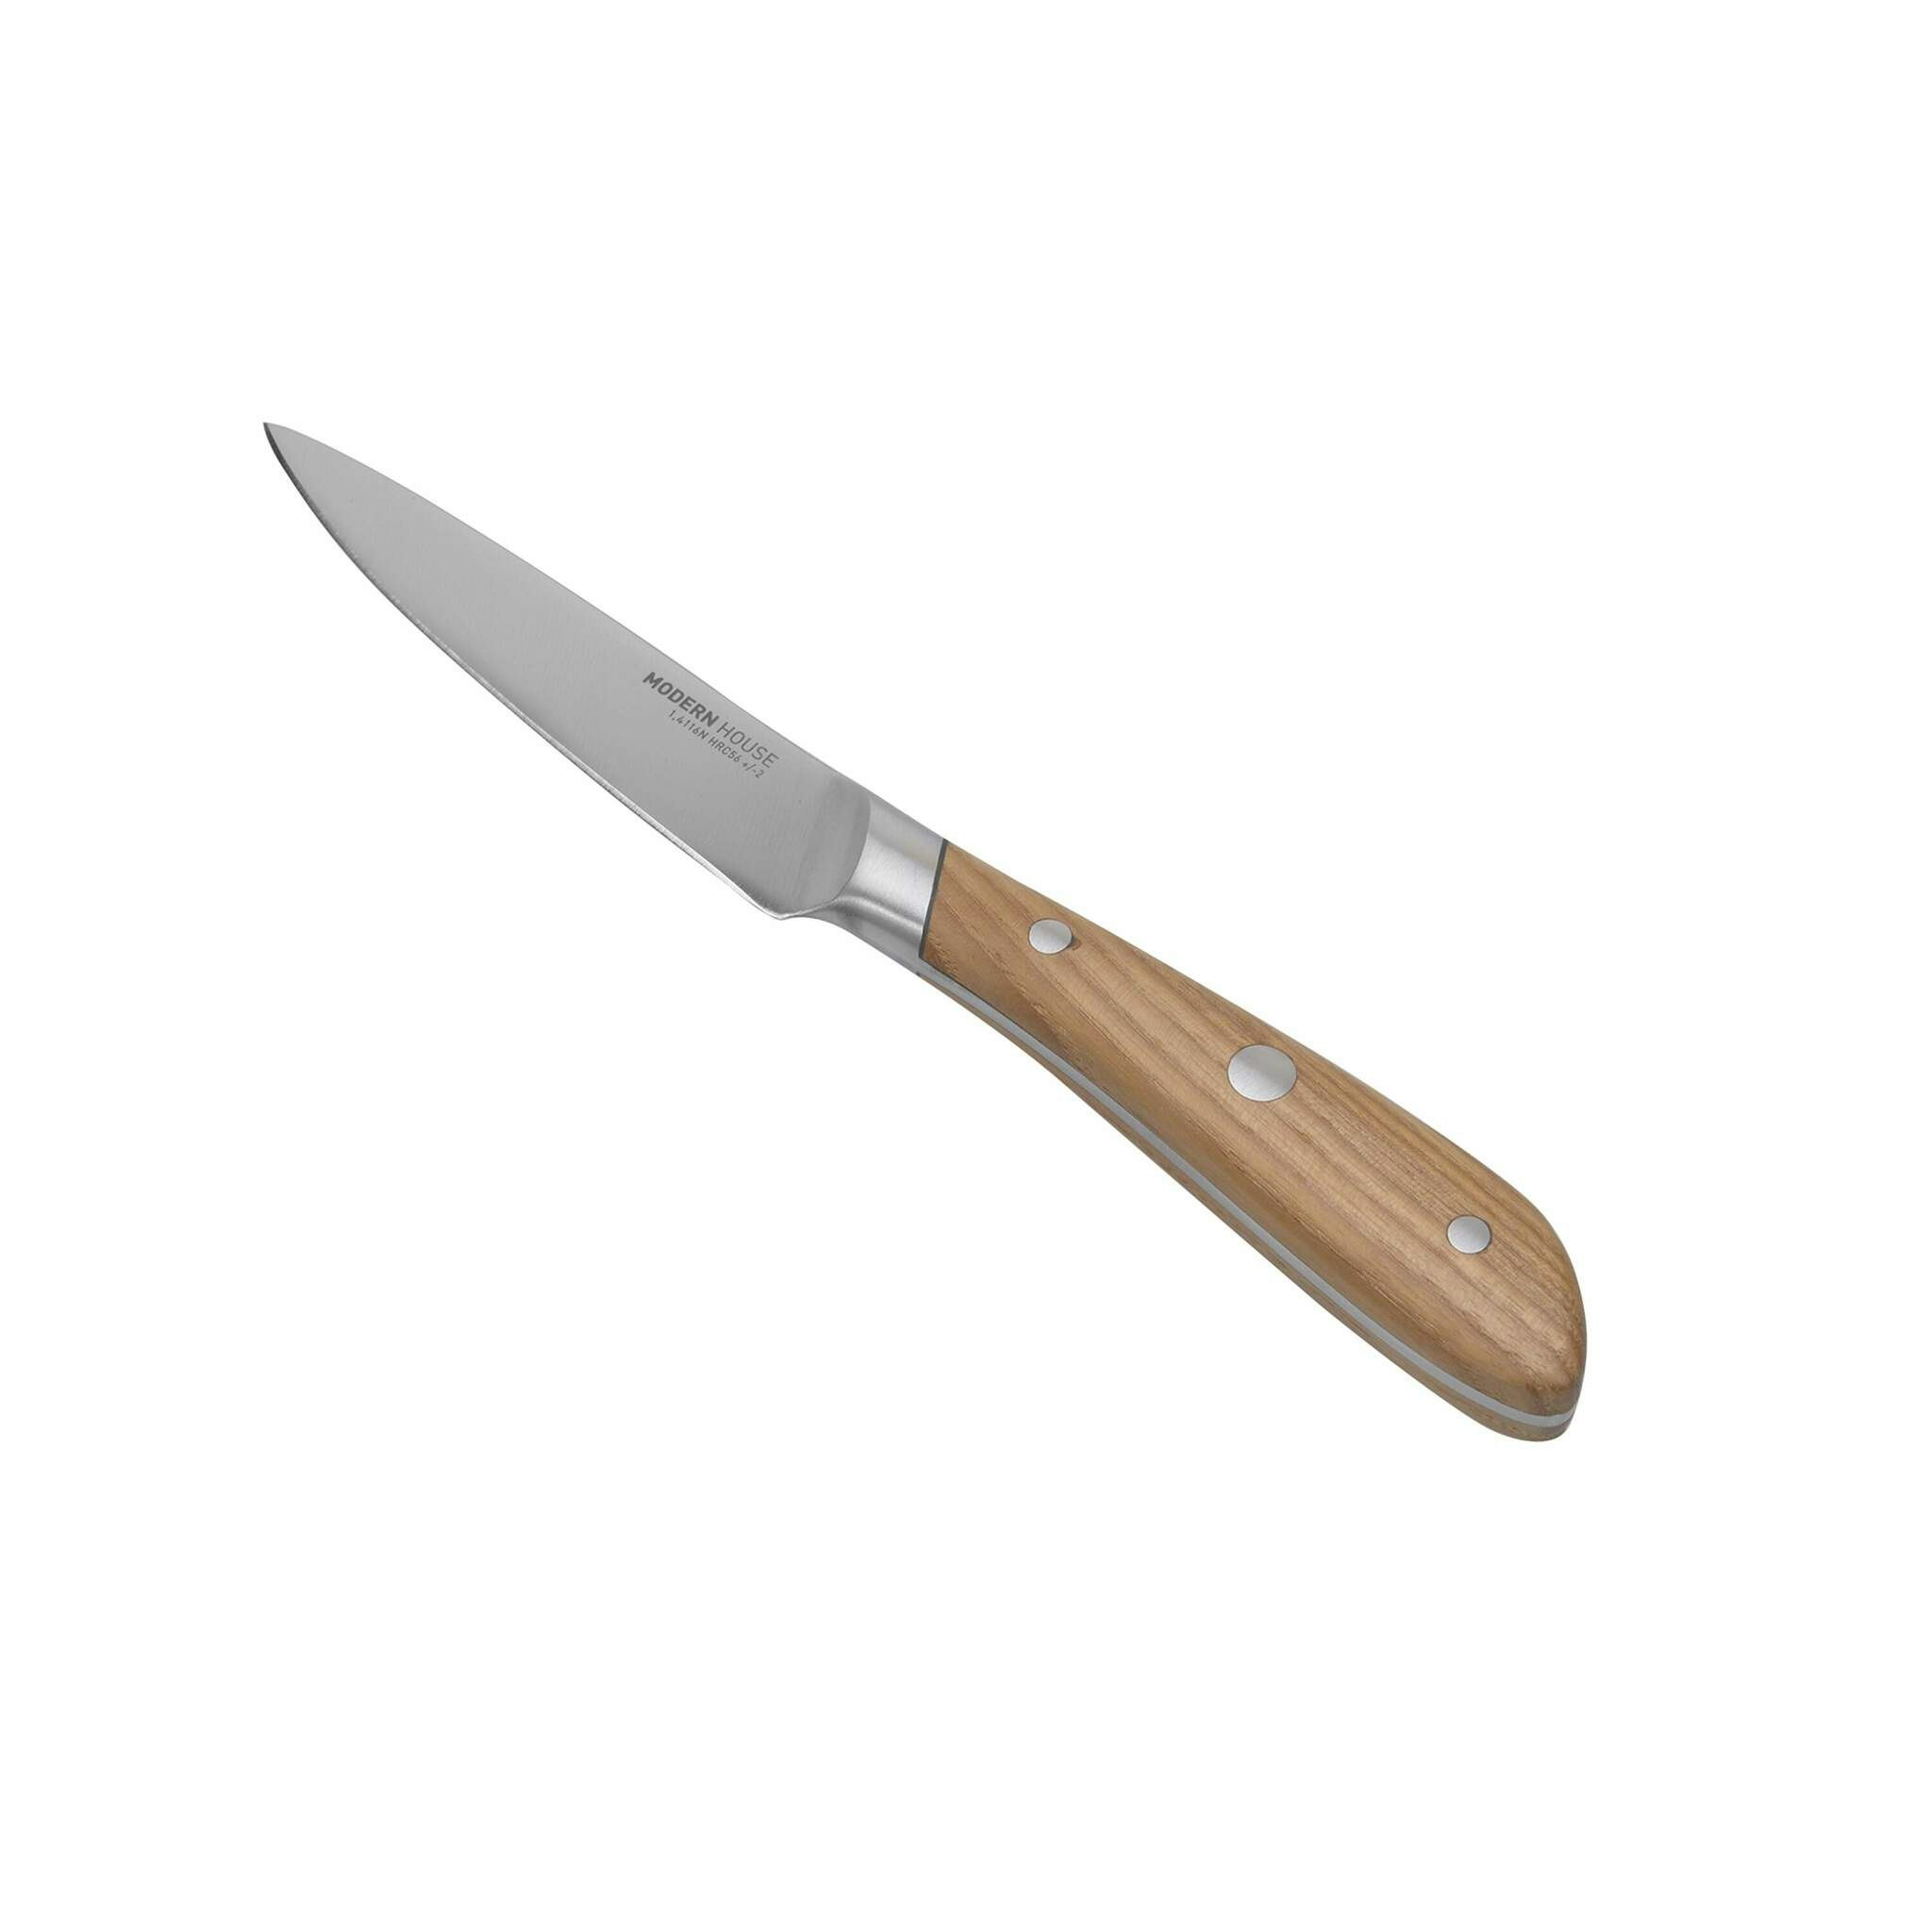 North en grönsakskniv/skalkniv från Modern House i stål med ett handtag i ask.